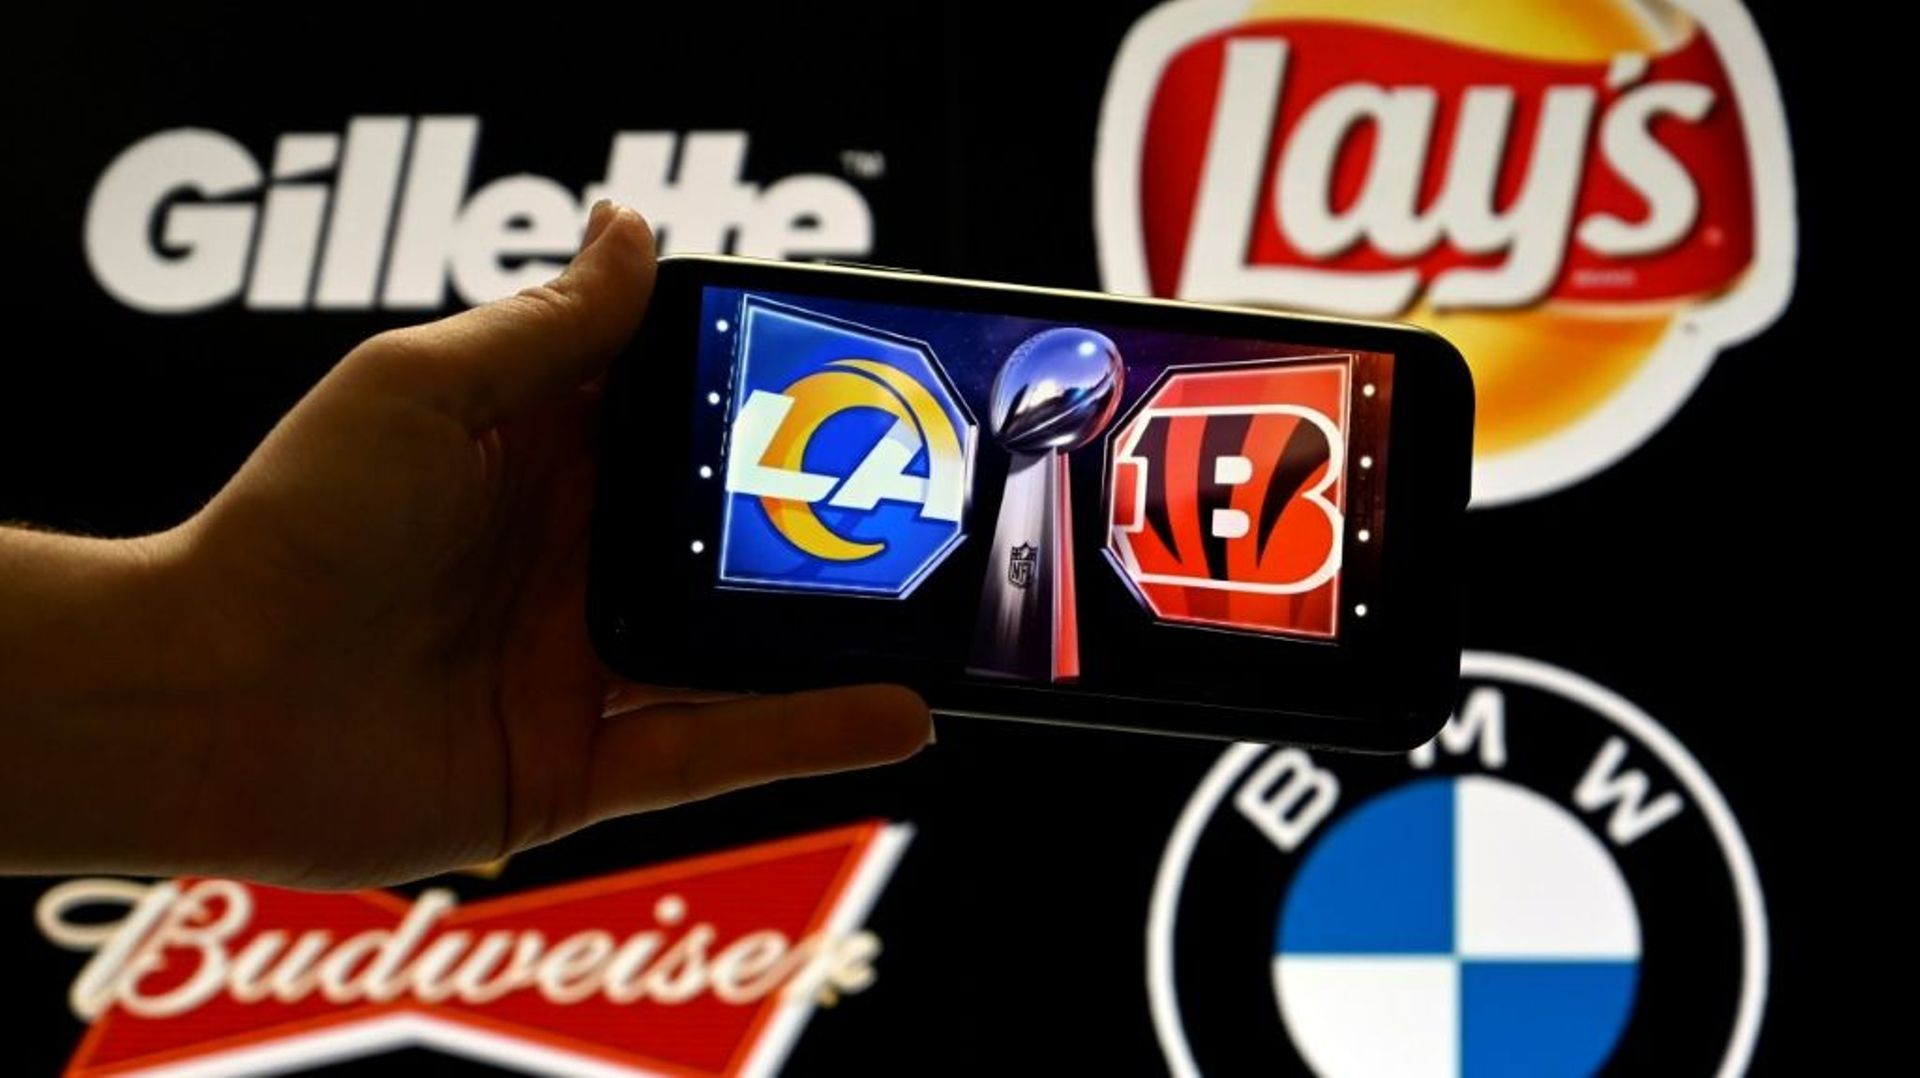 Les grandes marques Gillette, Lay's, Budweiser et BMW s'affichent en arrière-plan des logos des Cincinnati Bengals et des Los Angeles Rams à Washington, DC, le 9 février 2022   